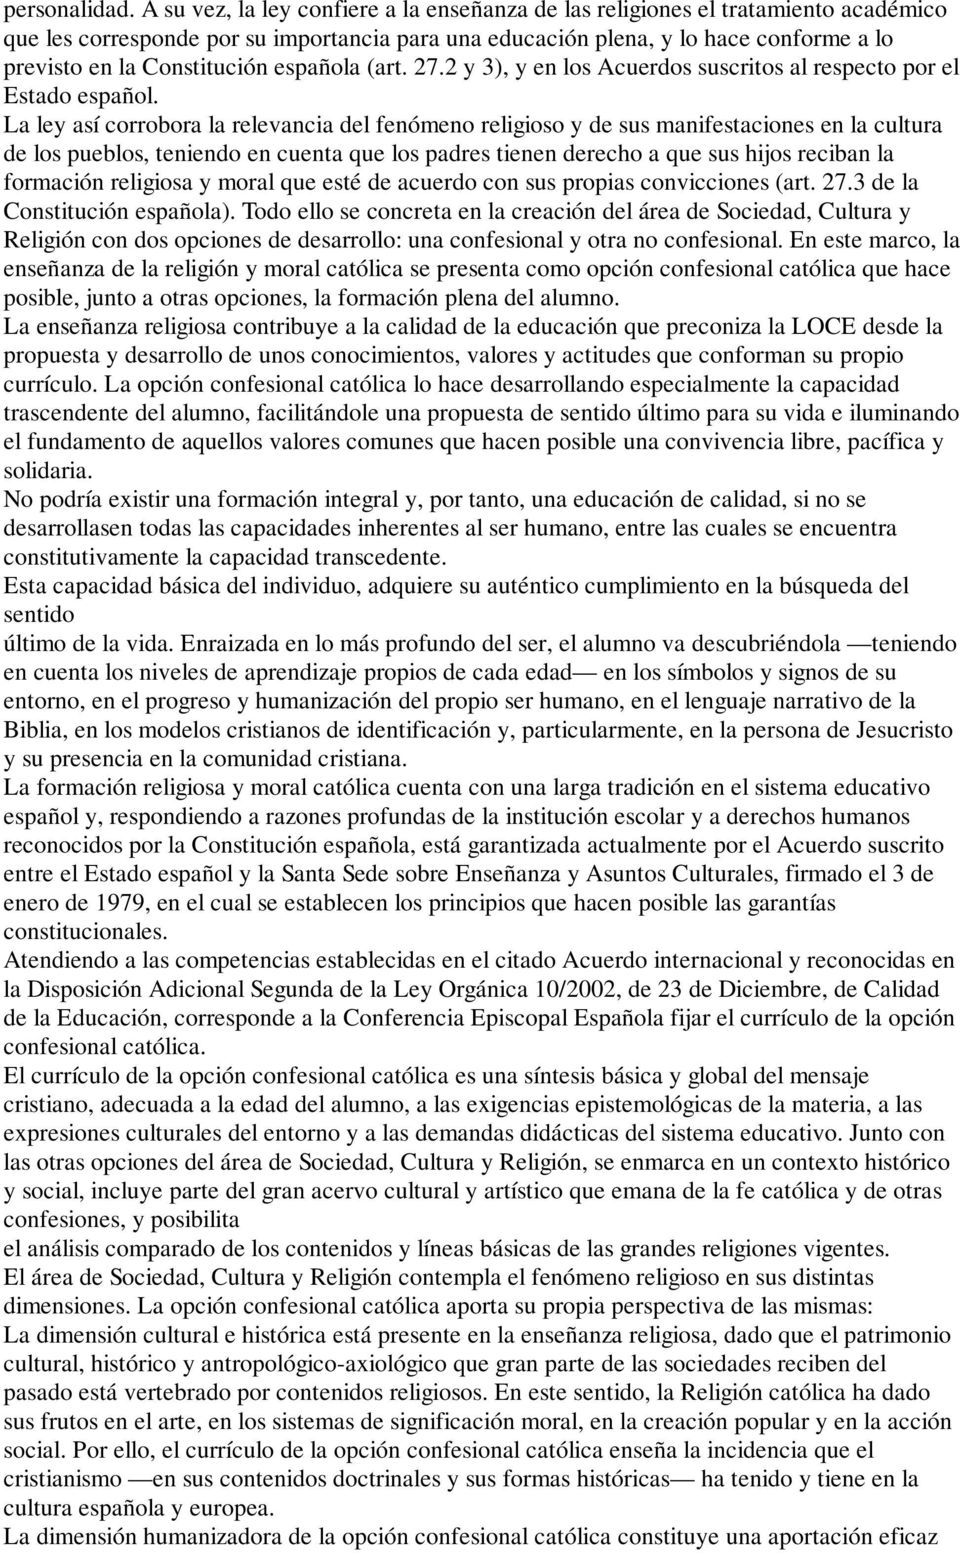 Constitución española (art. 27.2 y 3), y en los Acuerdos suscritos al respecto por el Estado español.